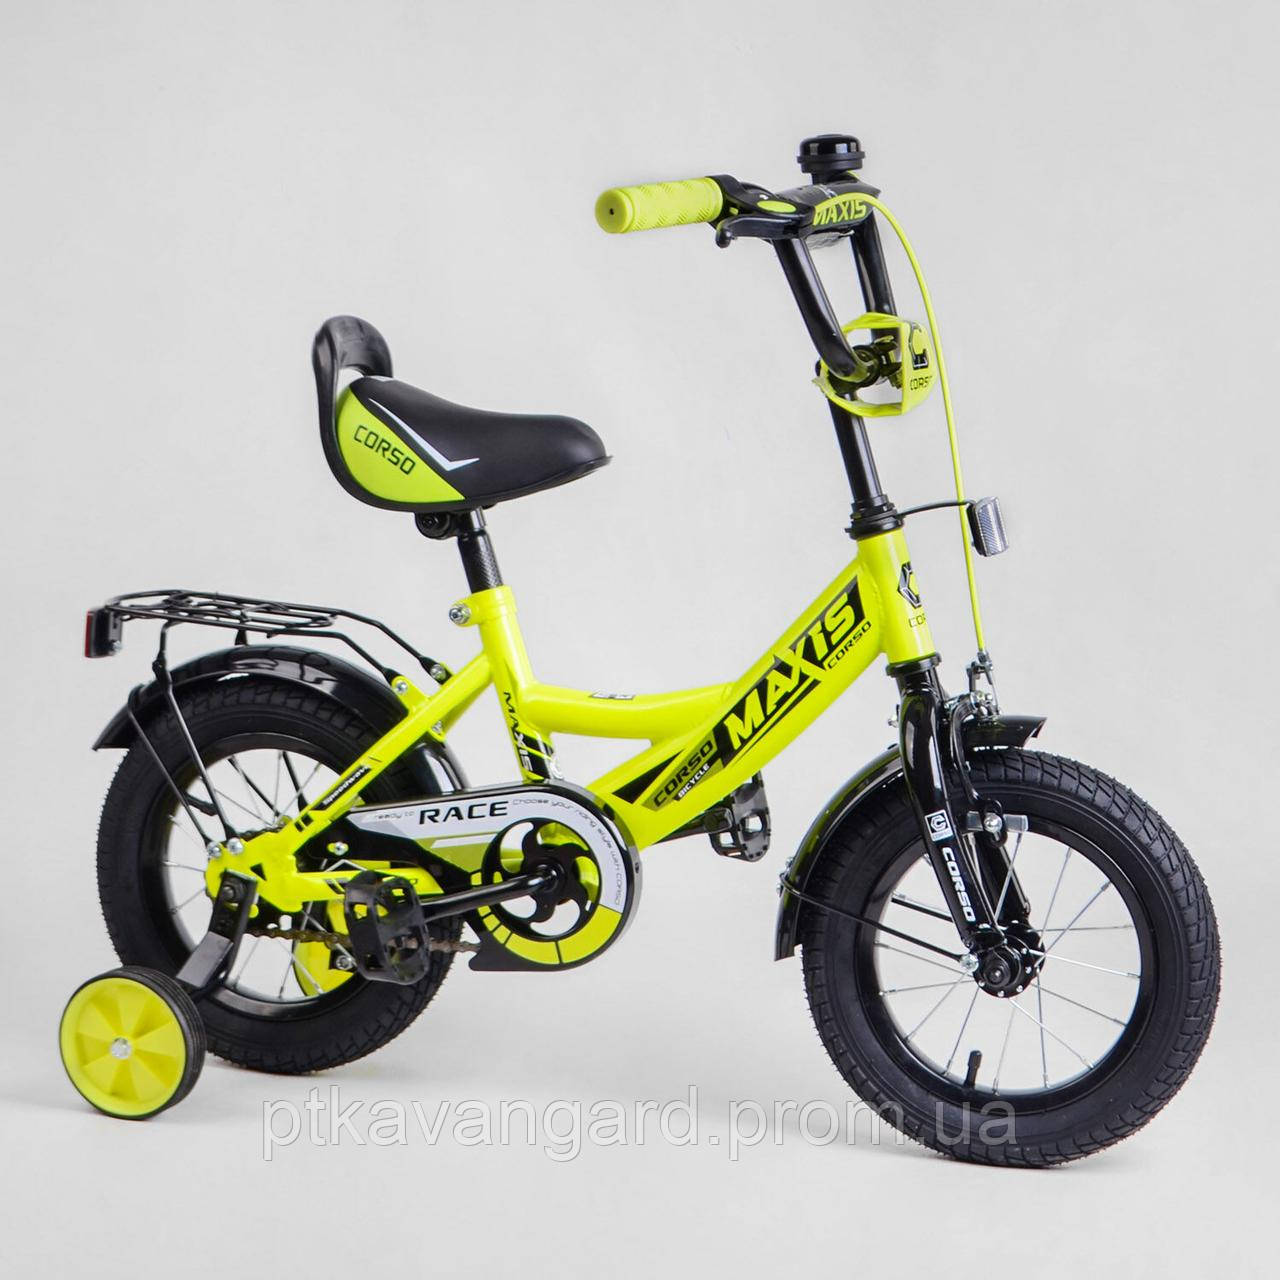 Двоколісний велосипед дитячий Жовтий 12 дюймів CORSO MAXIS (для дітей 3-4 роки) ручне гальмо